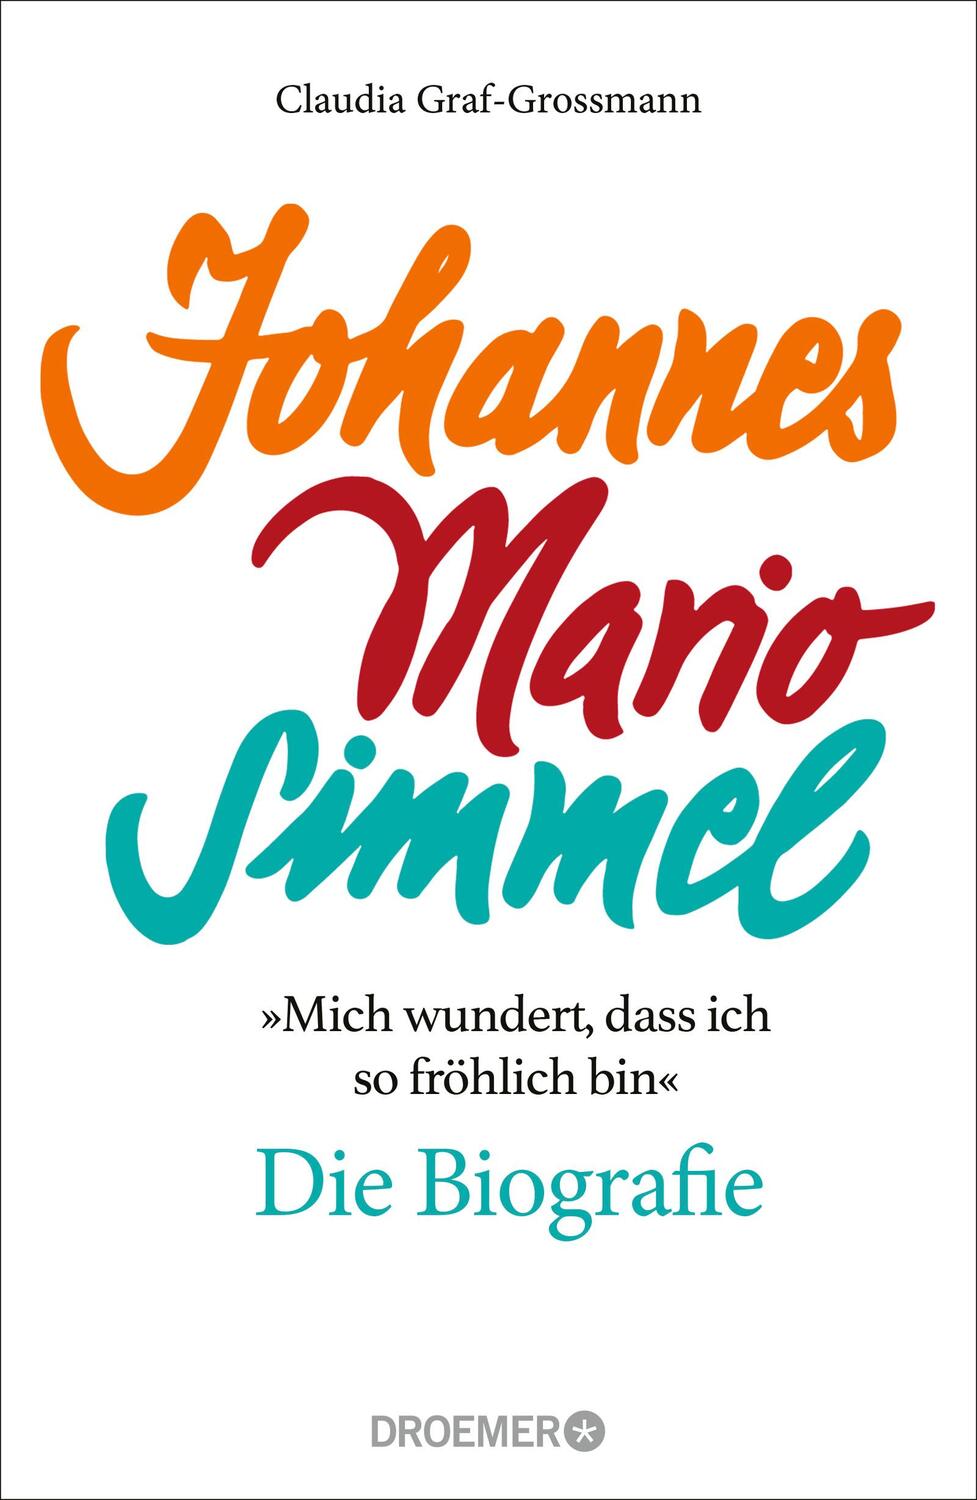 'Mich wundert, dass ich so fröhlich bin' Johannes Mario Simmel - die Biografie - Graf-Grossmann, Claudia